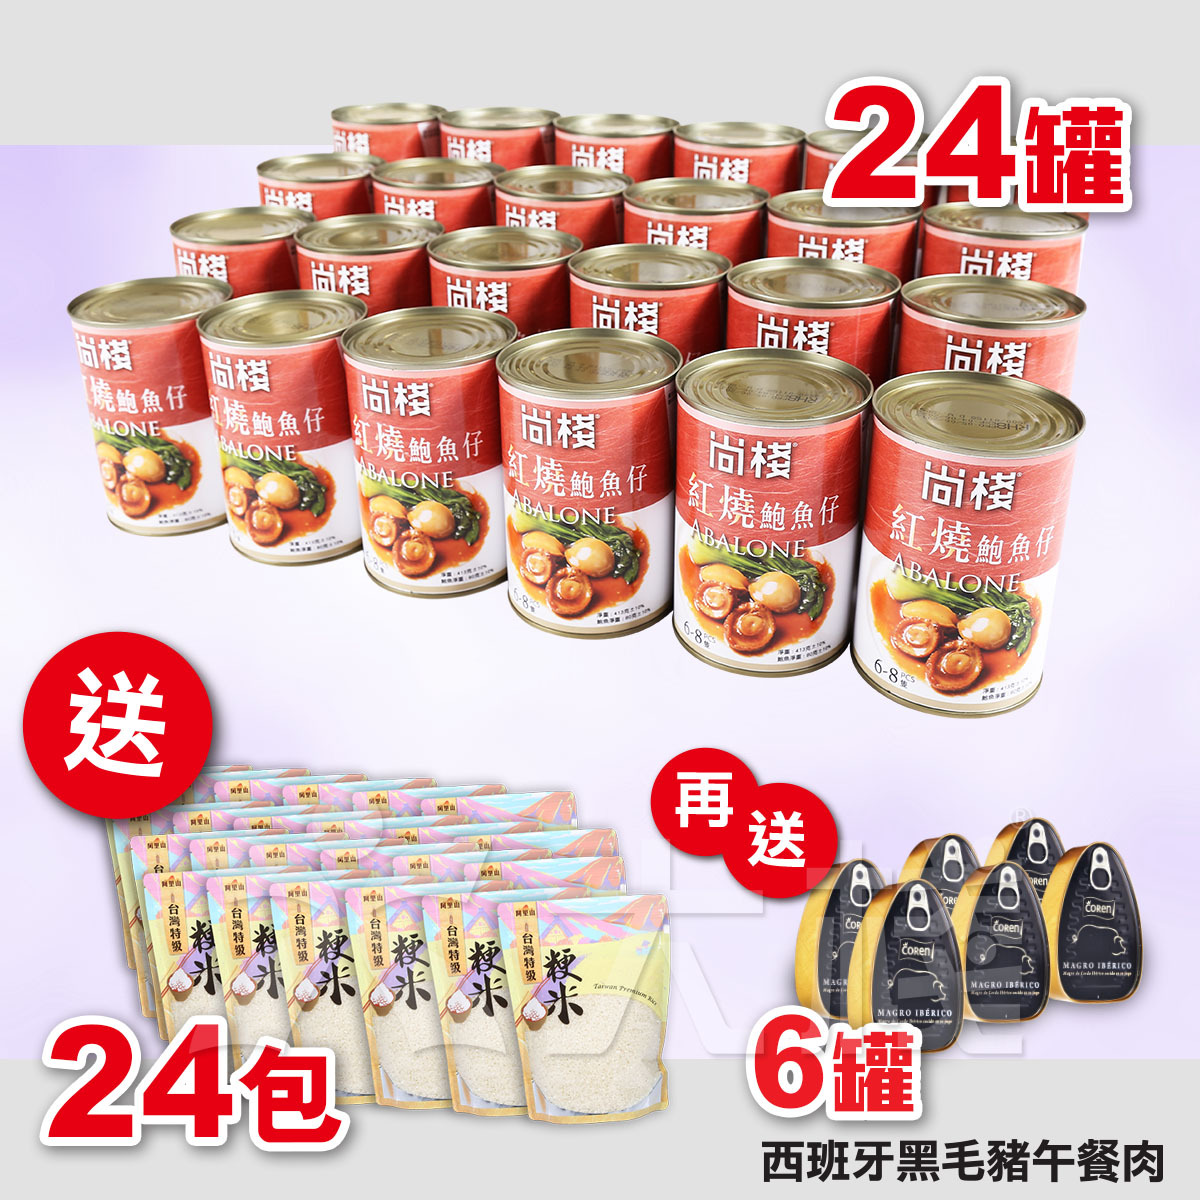 24罐 尚棧紅燒罐頭鮑魚仔 (6-8頭) 80克 送 24包 台灣特級粳米 (1公斤) 加送 6罐 黑毛豬午餐肉